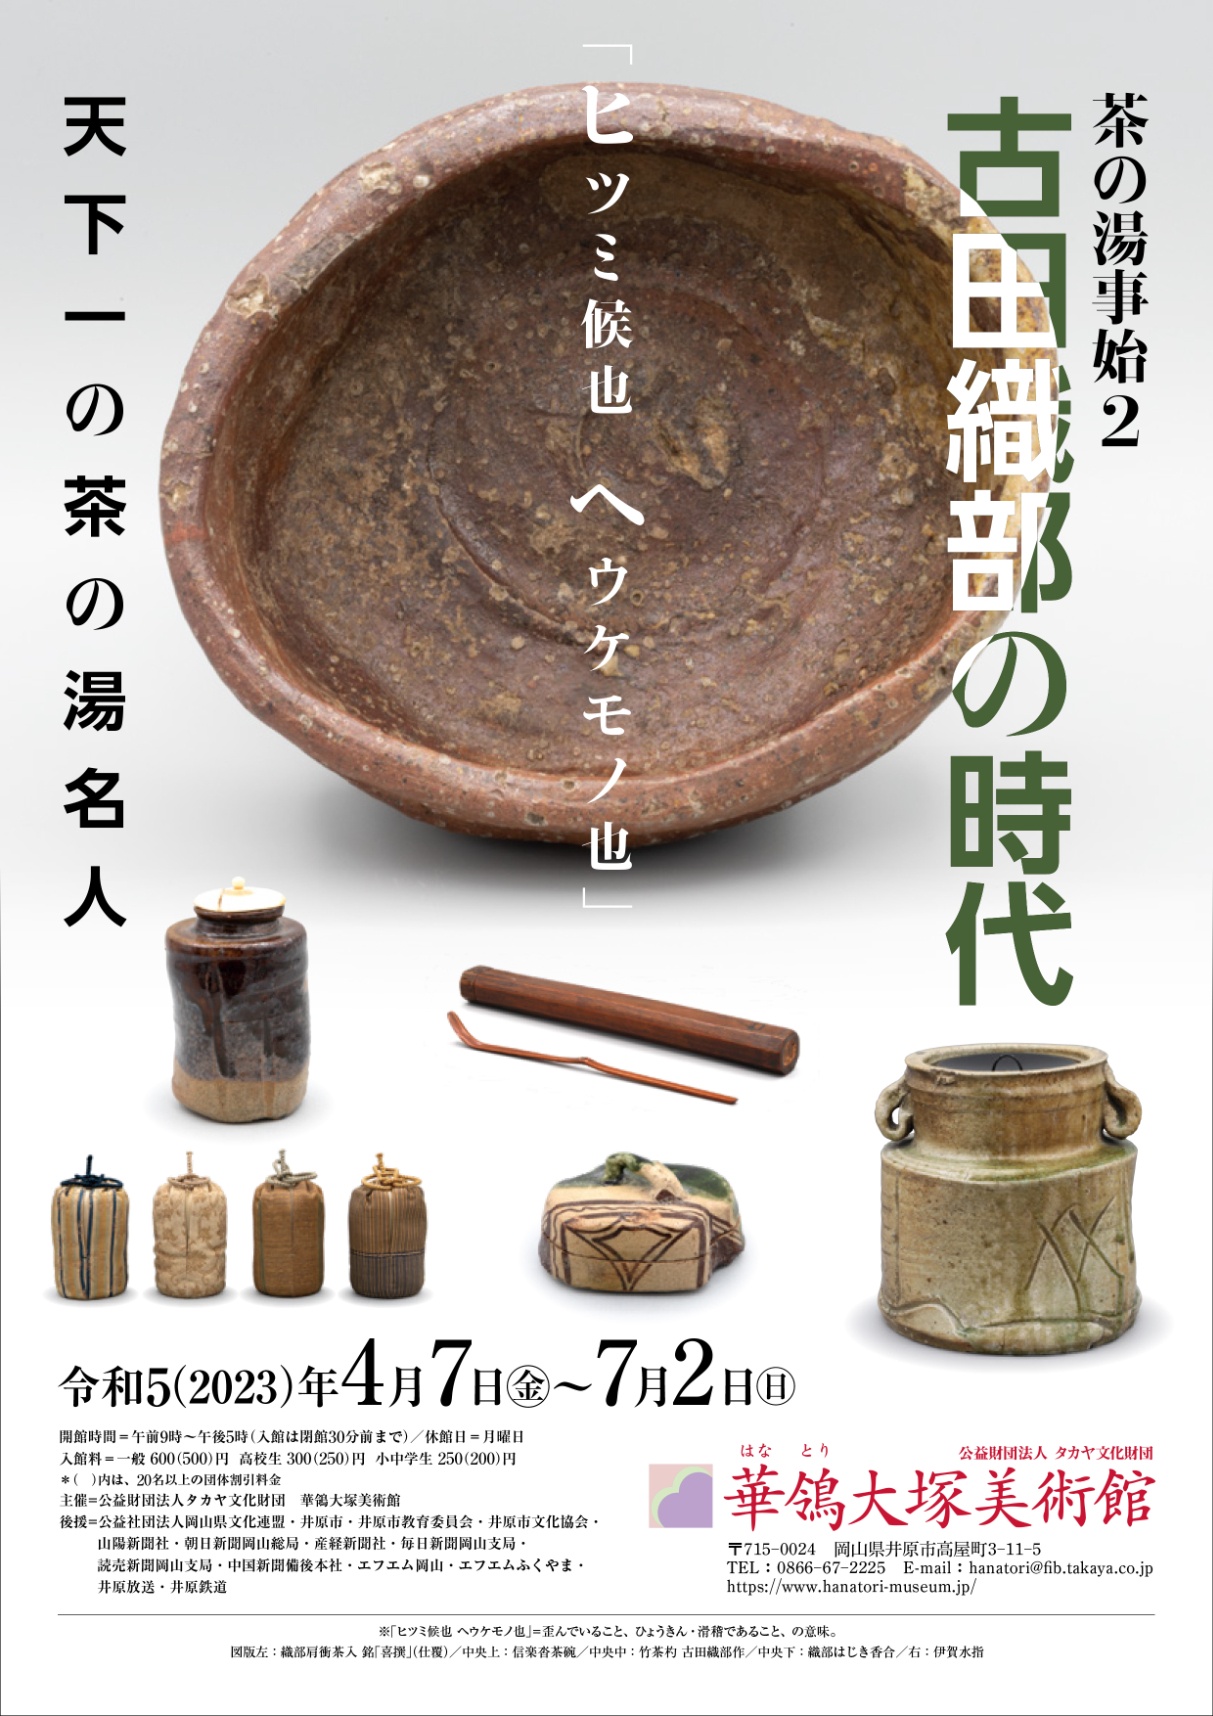 茶の湯事始2 古田織部の時代-天下一の茶の湯名人- | 展覧会 | 公益財団法人タカヤ文化財団